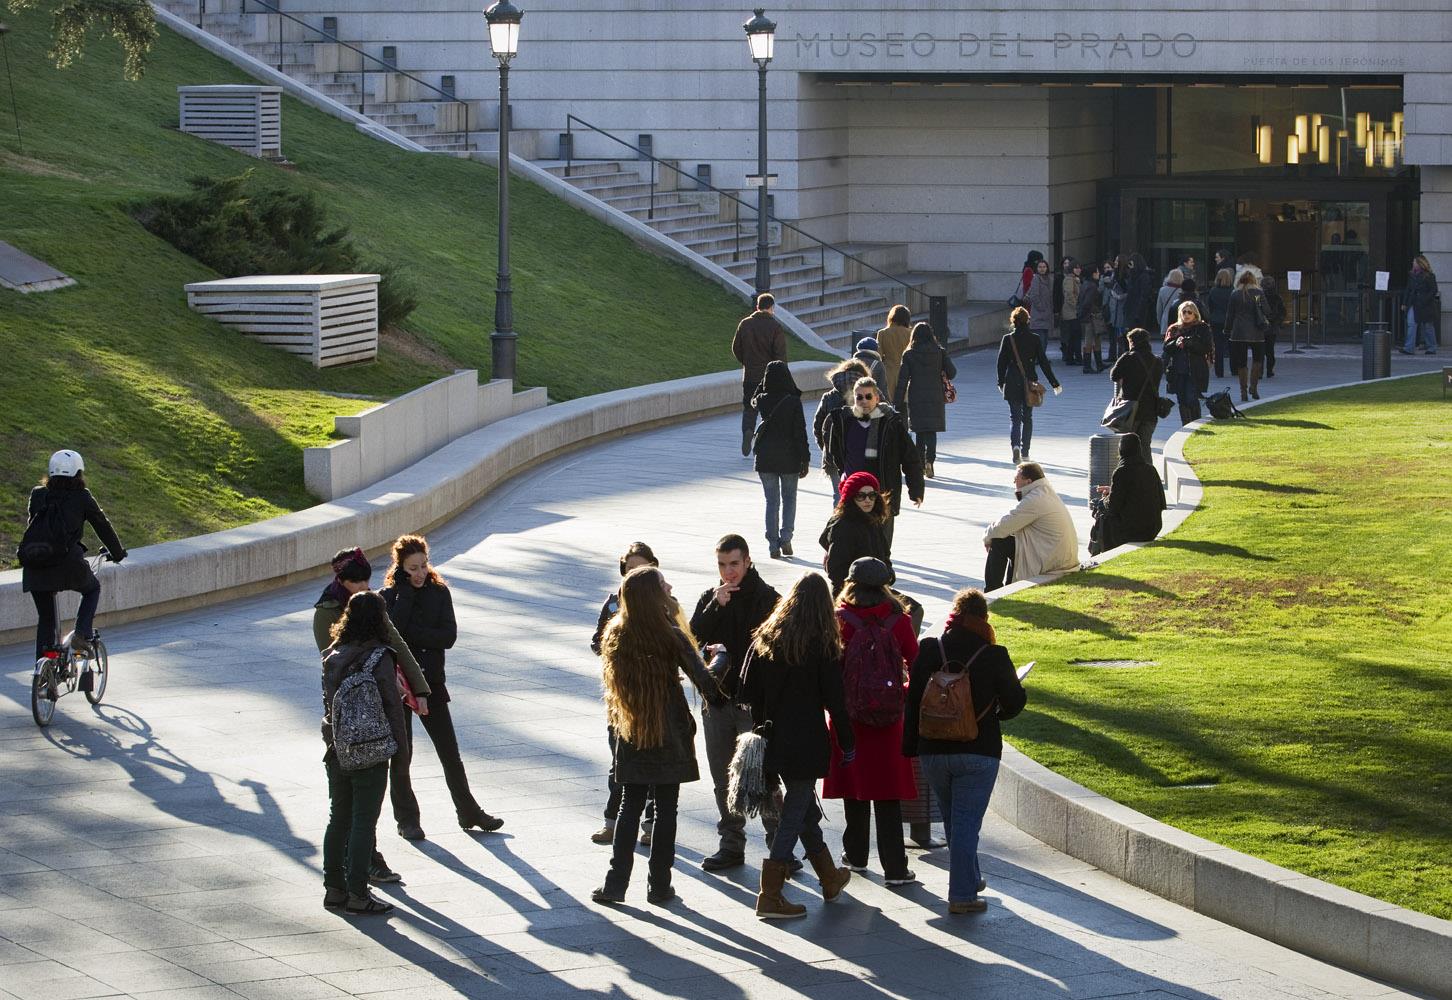 El Museo del Prado vuelve a superar los dos millones y medio de visitantes con un incremento del 7,65% respecto a 2013